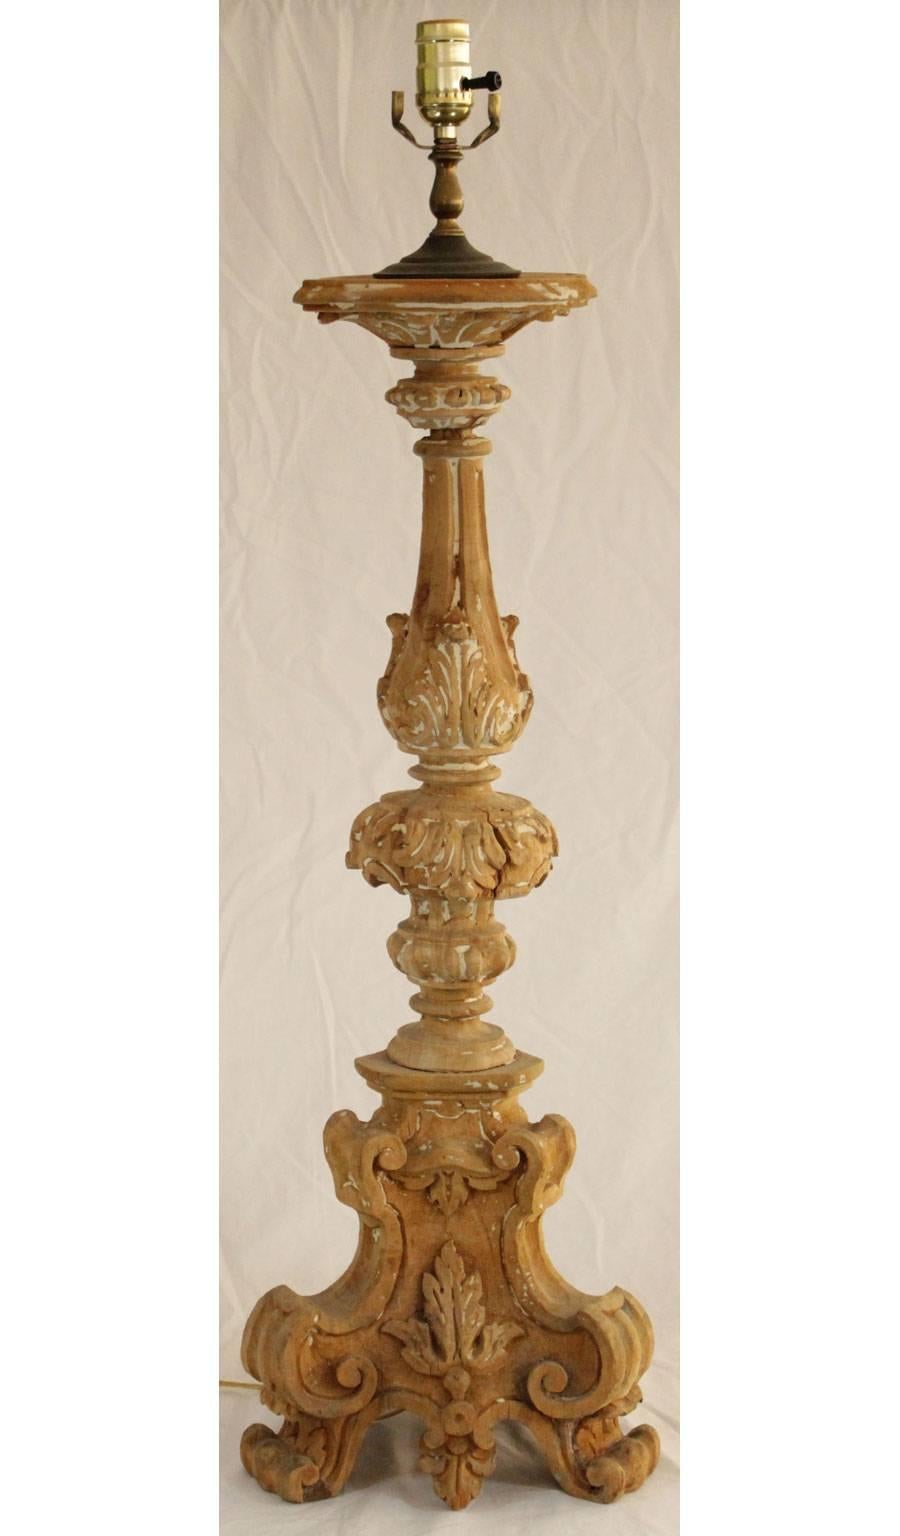 Baguette en bois sculpté, avec une finition en bois décapé, sur une base tripartite avec des pieds en forme de volutes. Electrifié.

Stock ID : D6973